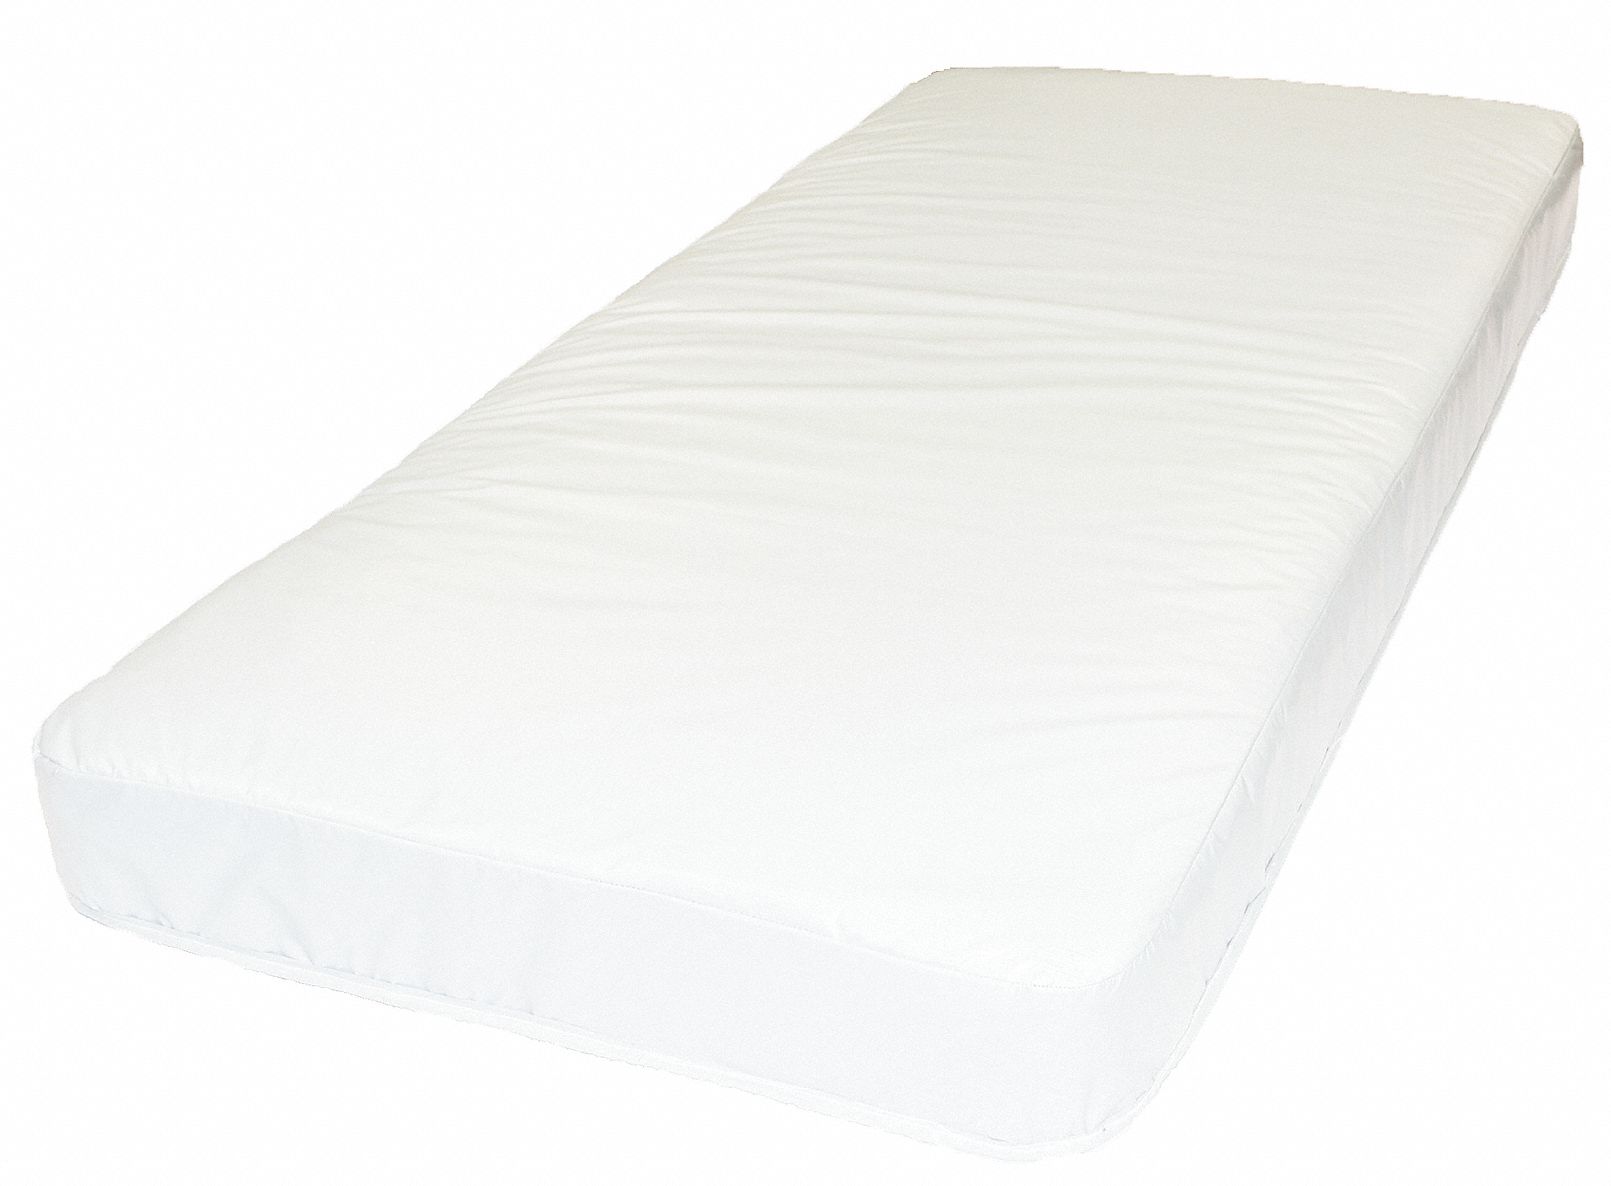 36 x 76 mattress bed sheet